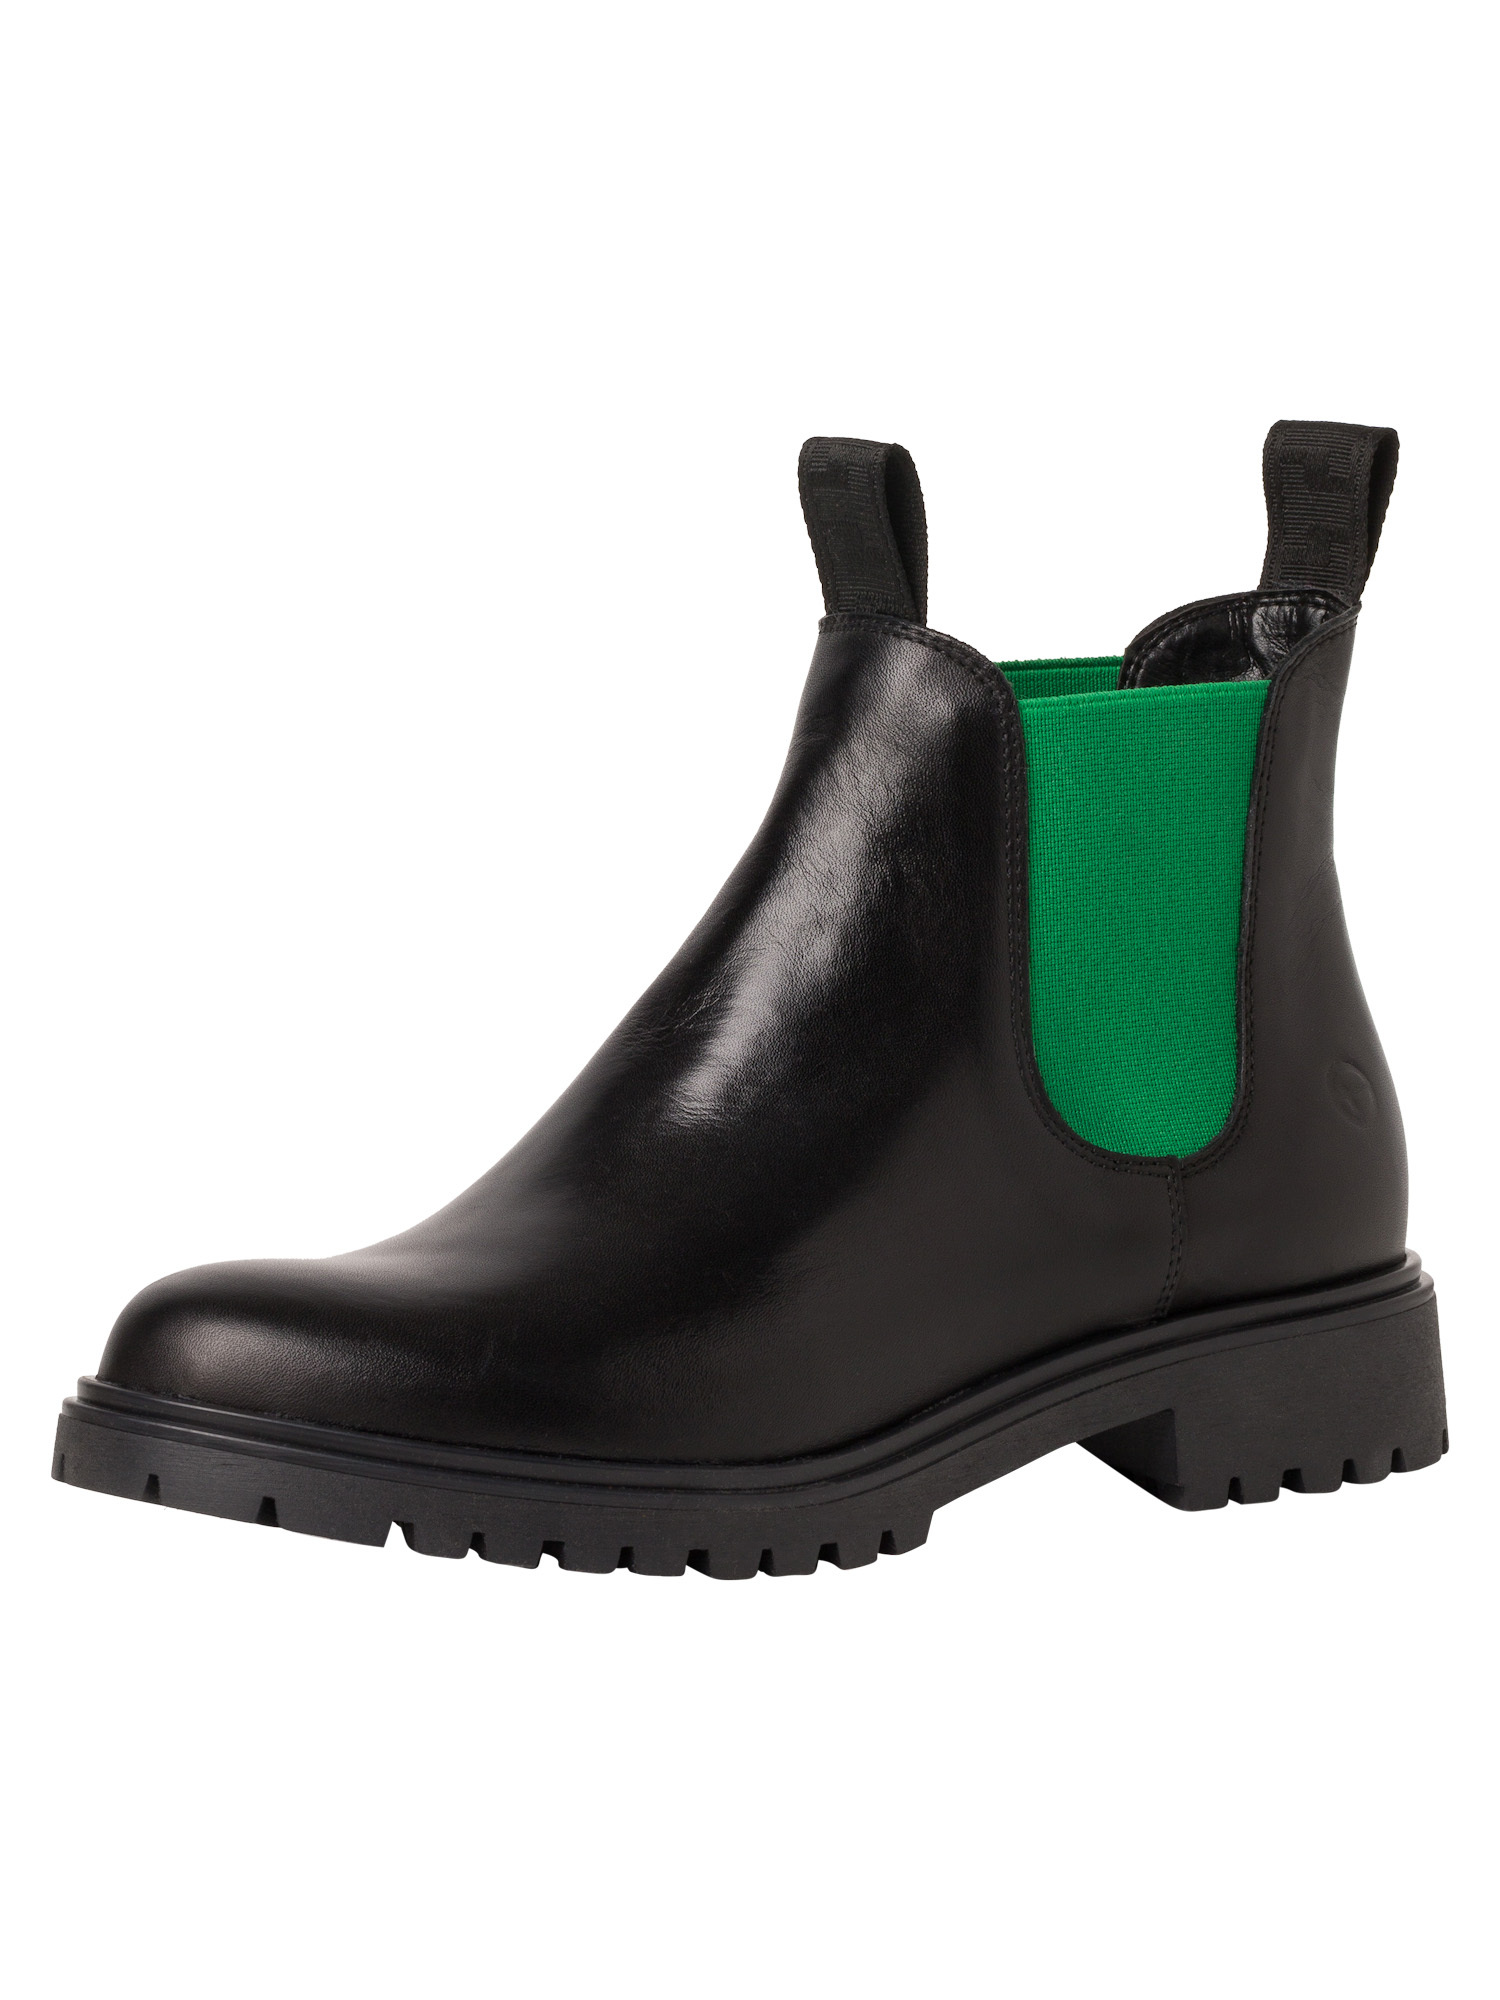 Ботинки Tamaris Chelsea Boot, черный lea./зеленый ботинки tamaris chelsea boot зеленый